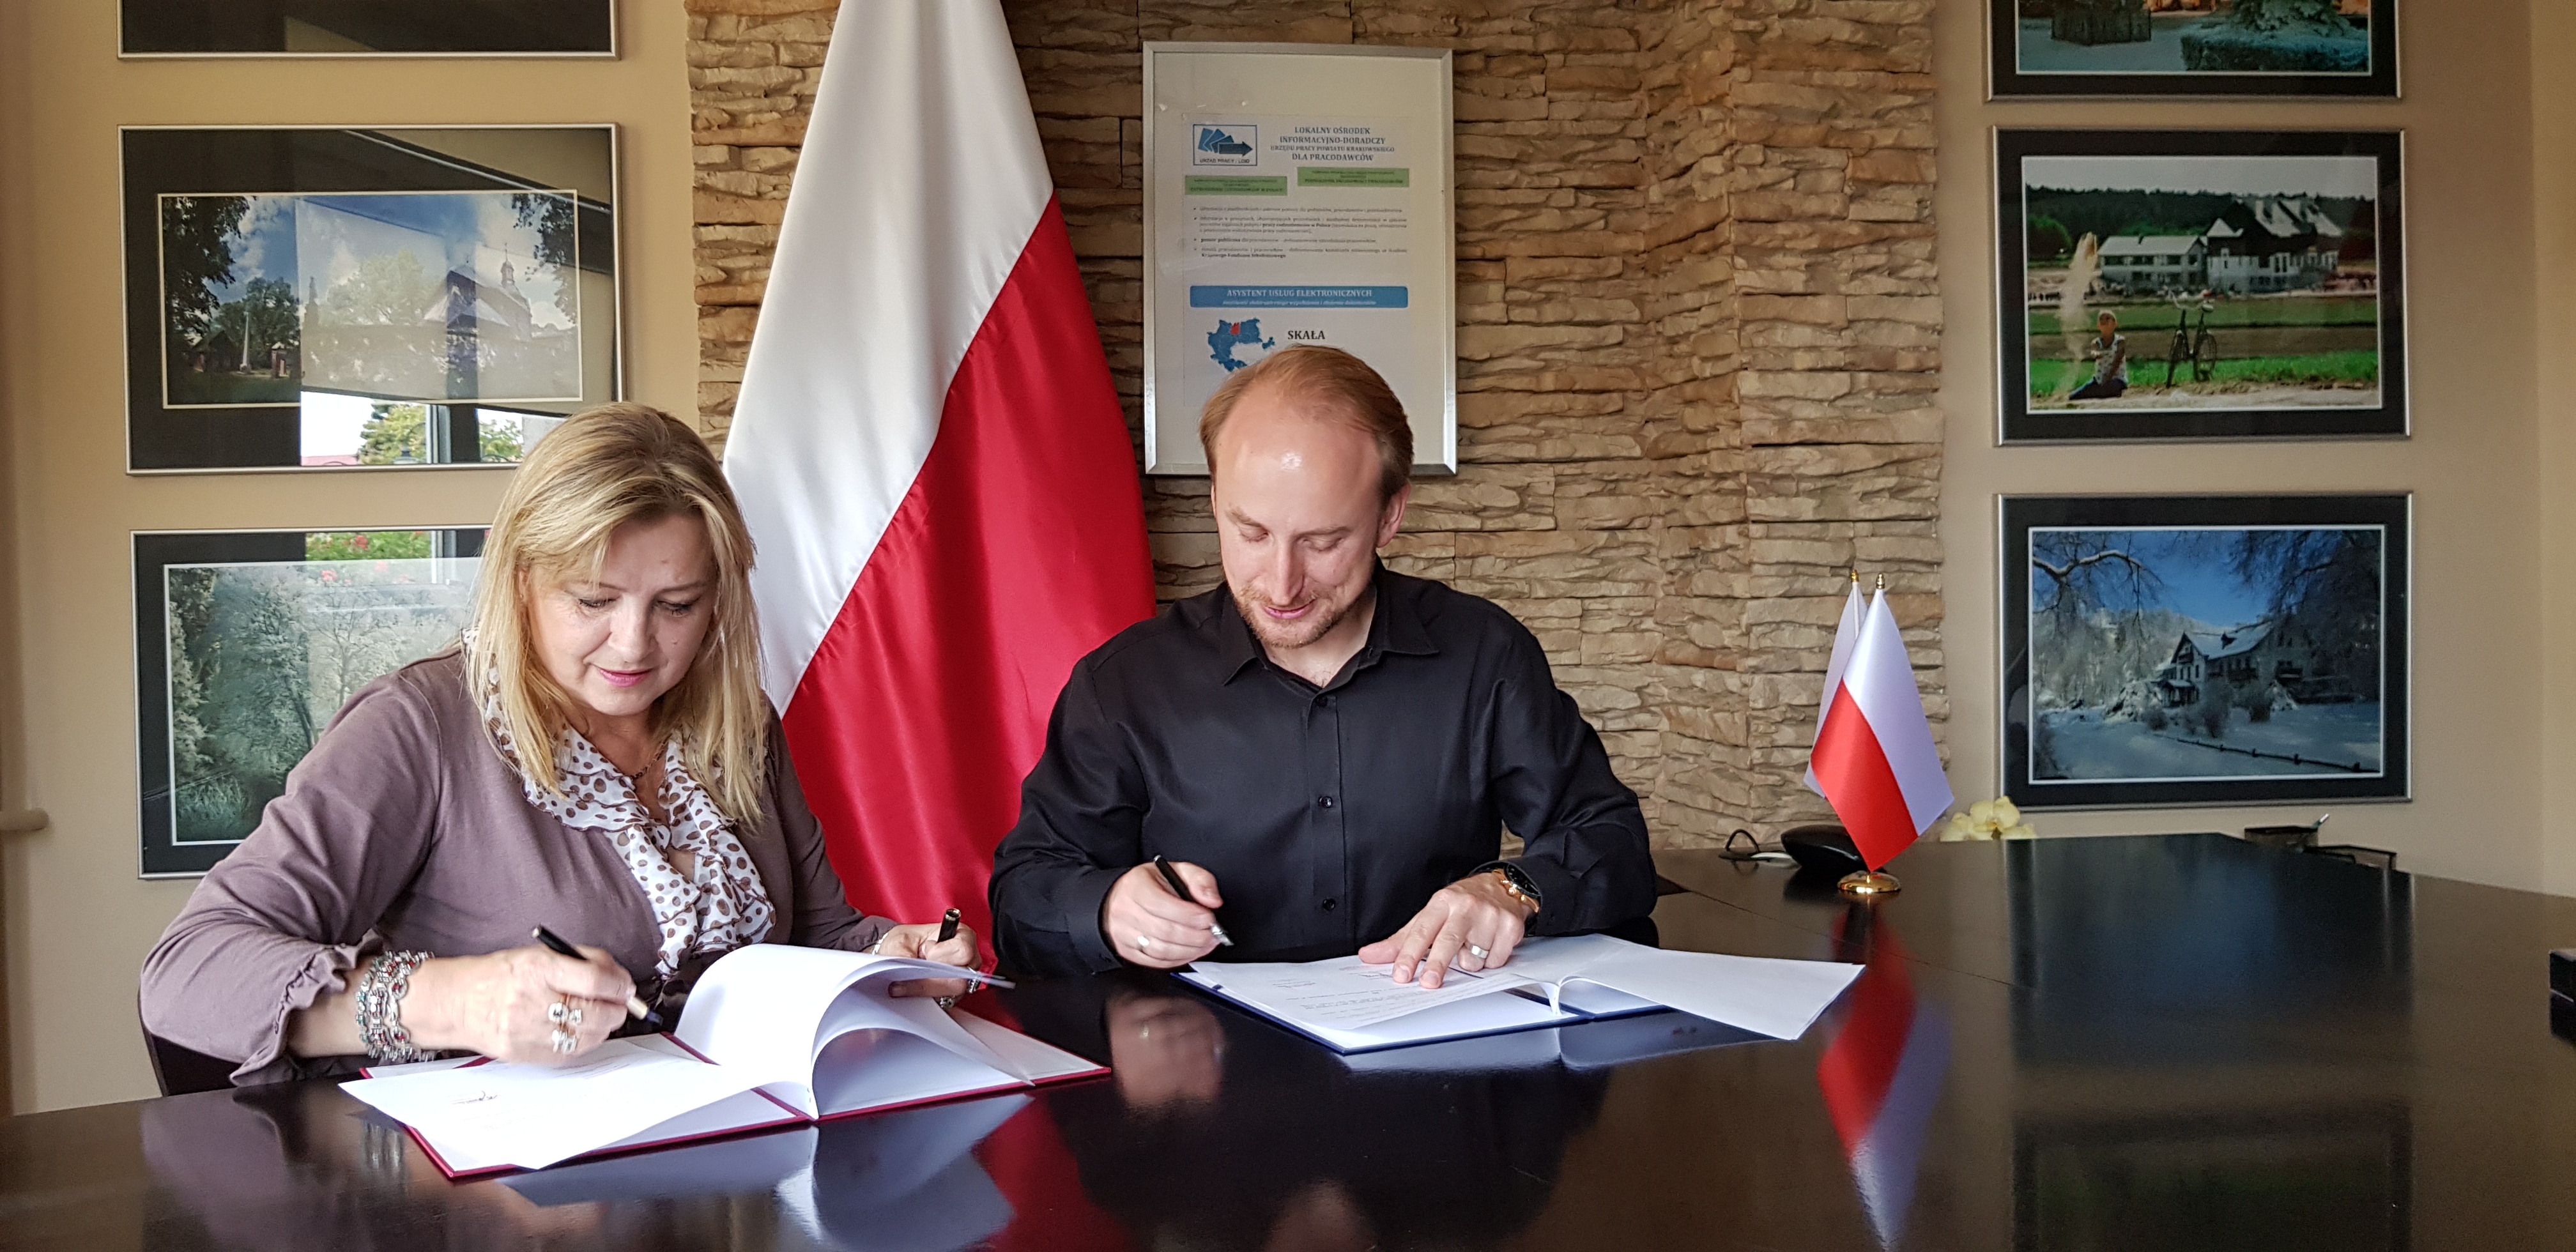 Dyrektor Urzędu Pracy Powiatu Krakowskiego oraz Wójt Gminy Skała pdpisują porozumienie